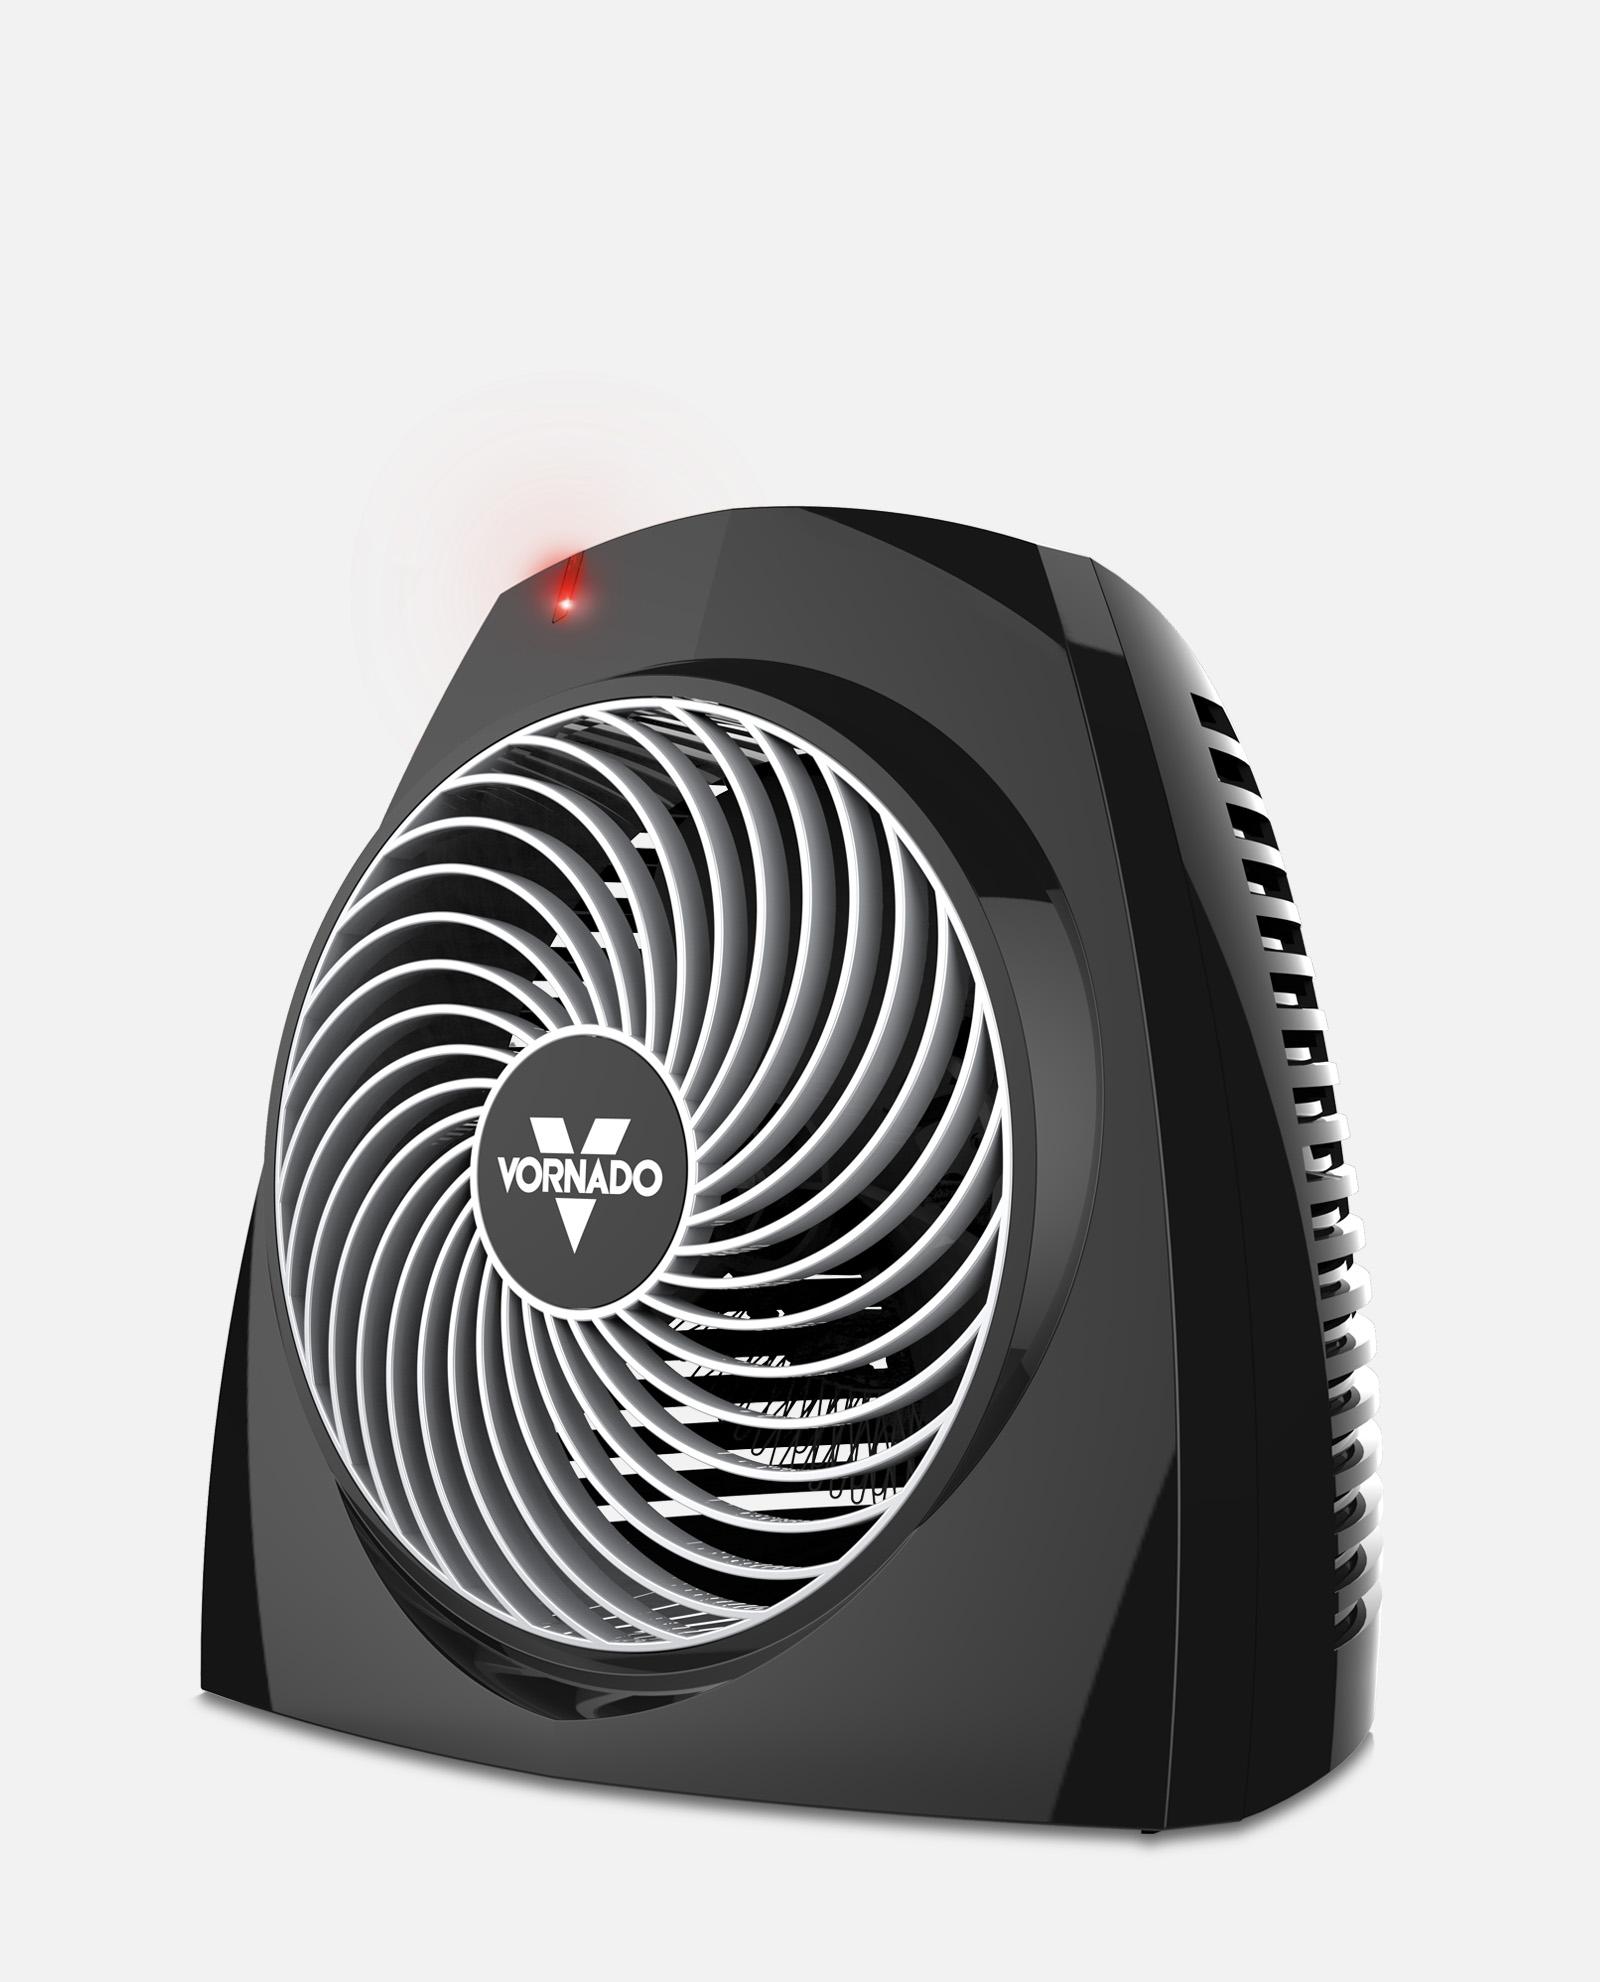 Radiateur ventilateur portatif For Living, 1500 W, blanc